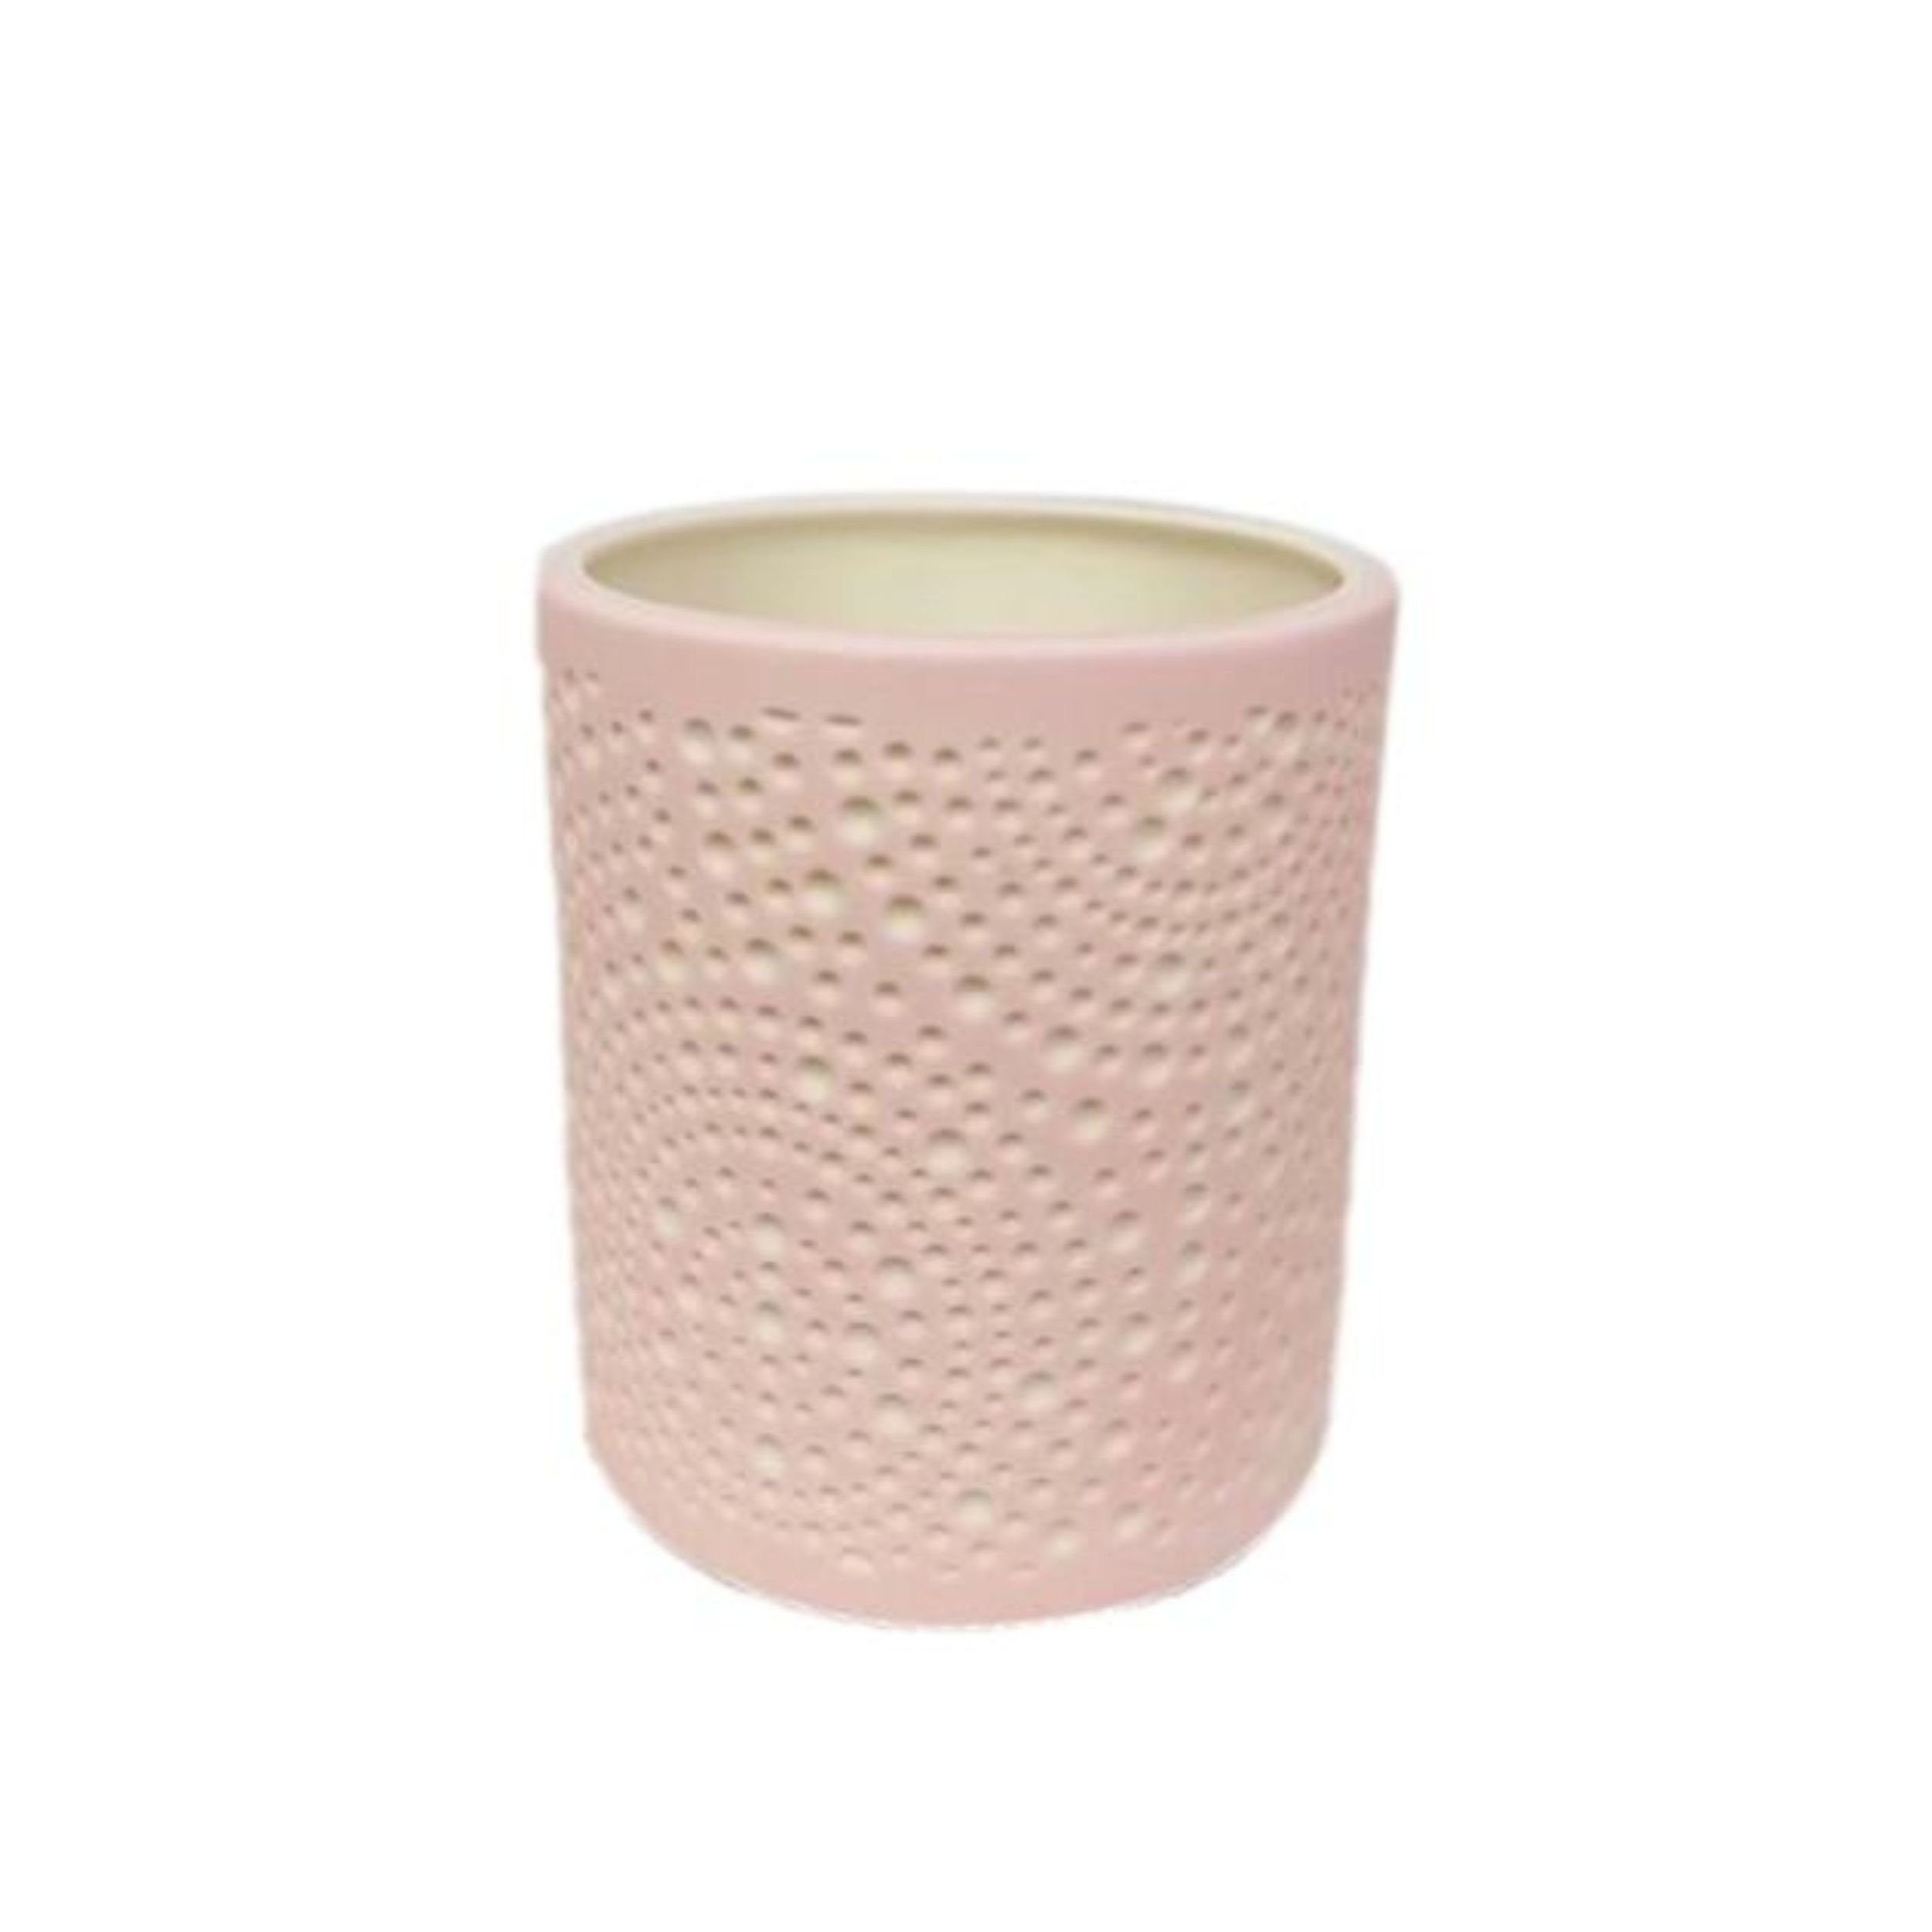 Home Society B.V. Windlicht Porzellan Teelichthalter in Rosa 8cm | Windlichter